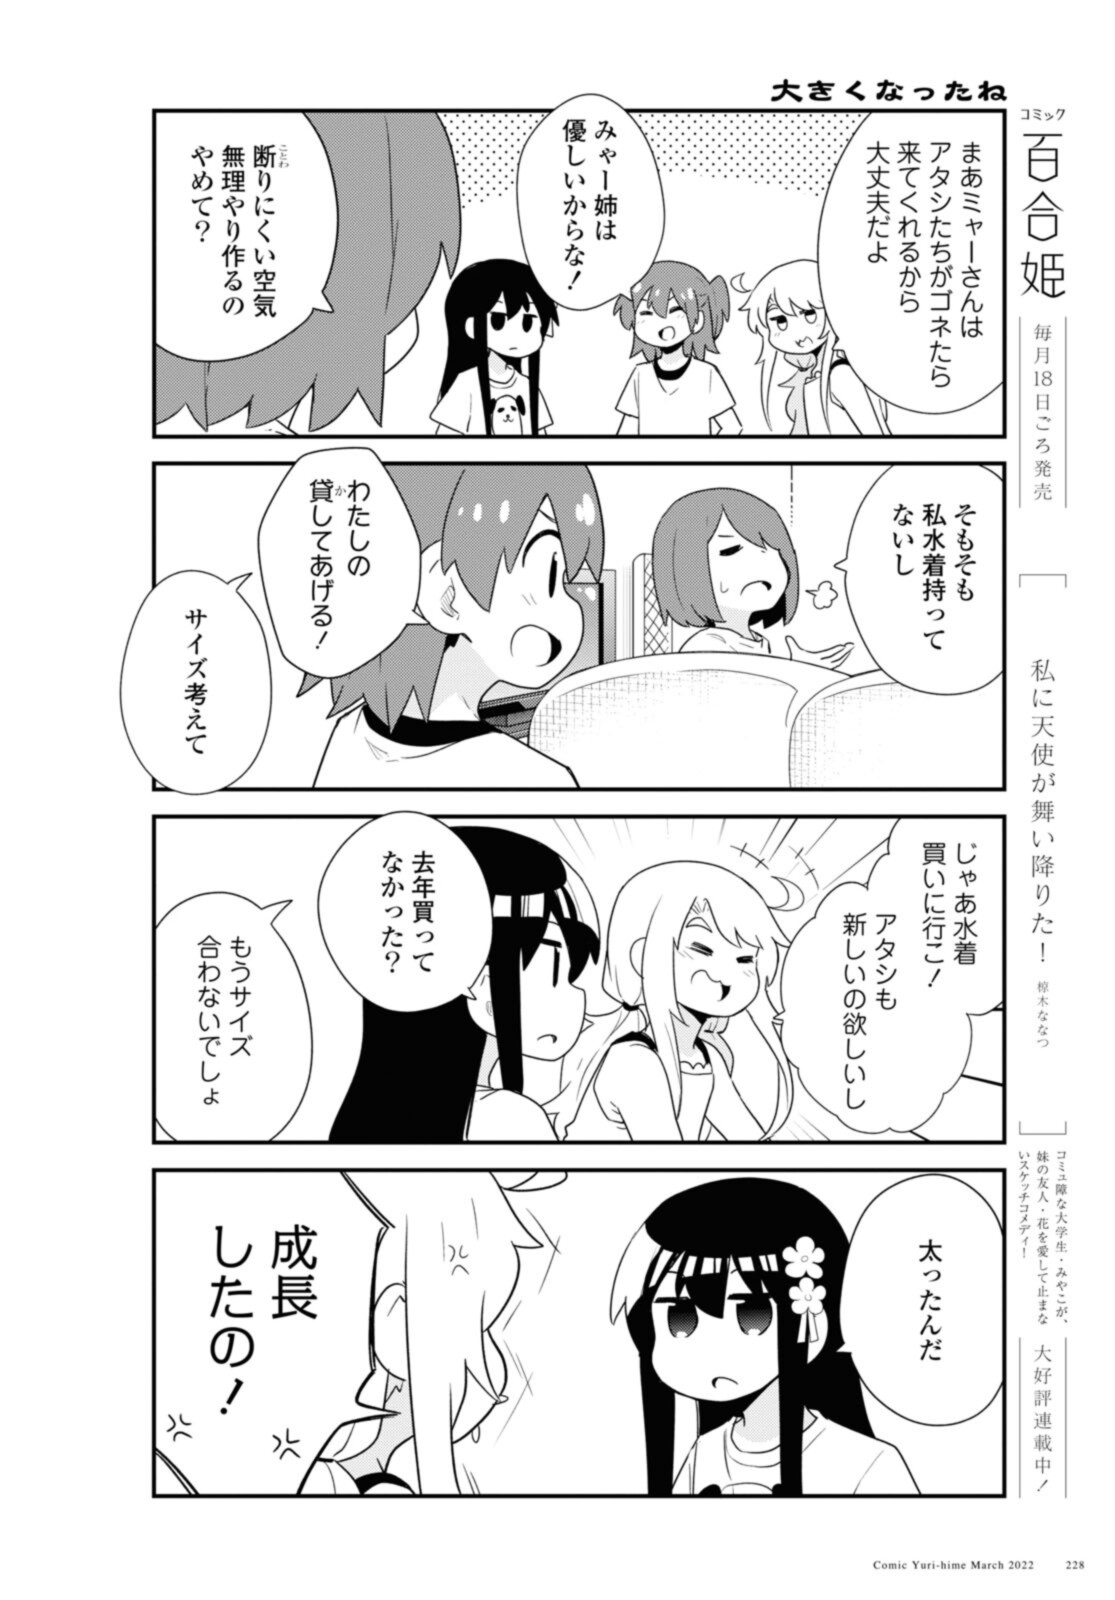 Watashi ni Tenshi ga Maiorita! - Chapter 93 - Page 4